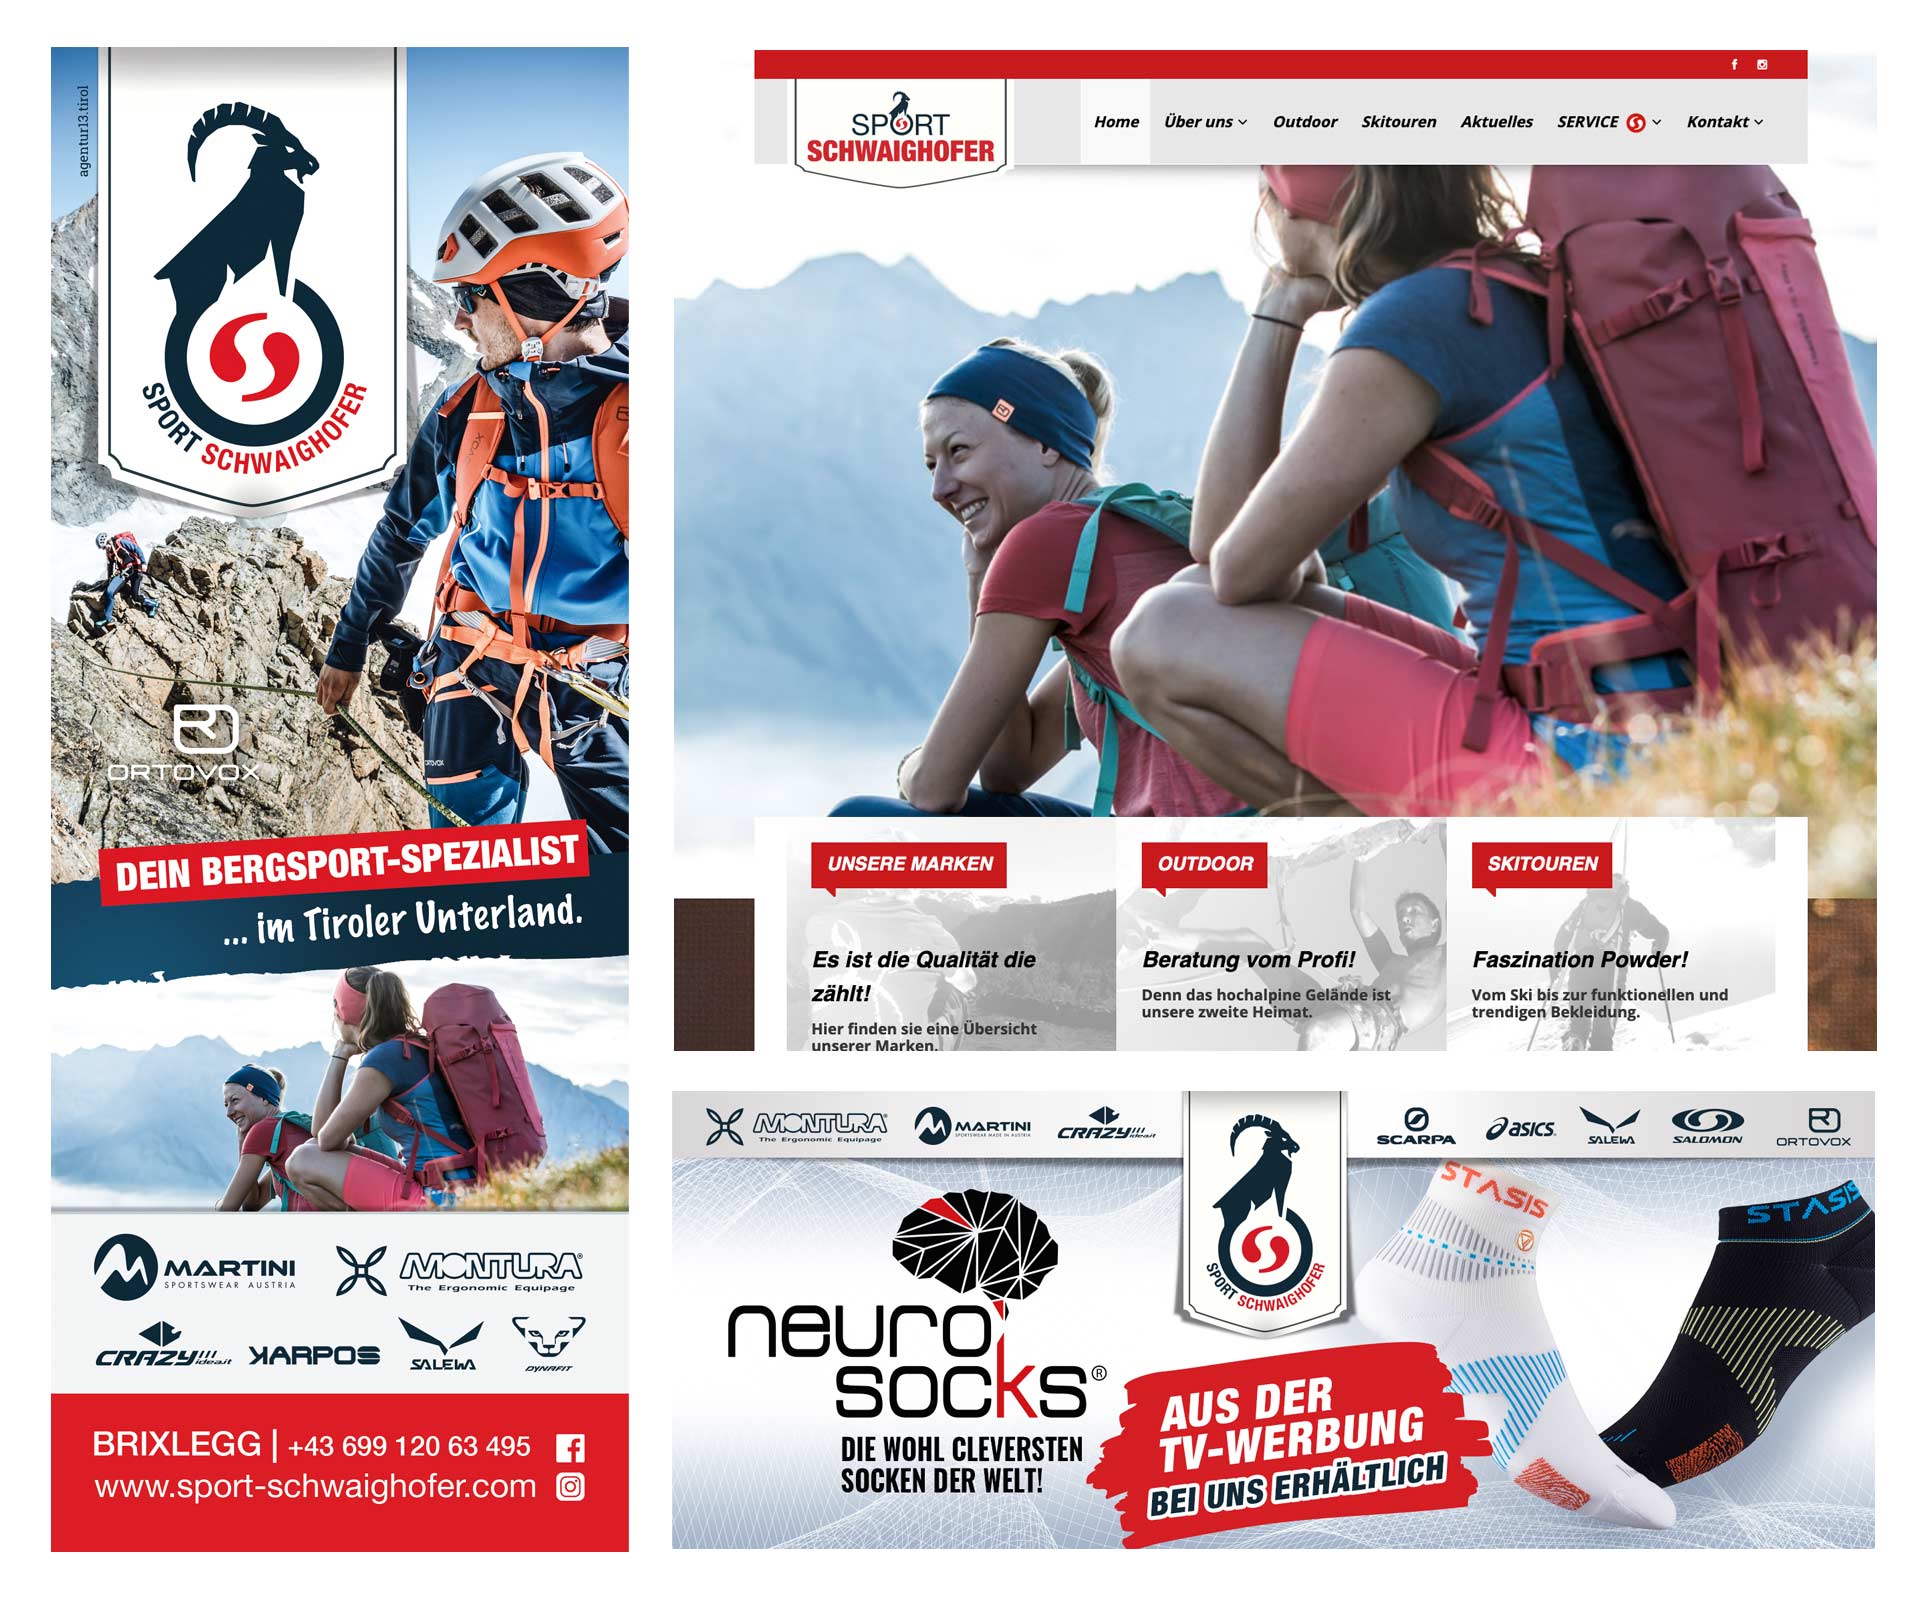 Werbeagentur - agentur 13 Tirol, Sport Schwaighofer, Grafikdesign, Webdesign